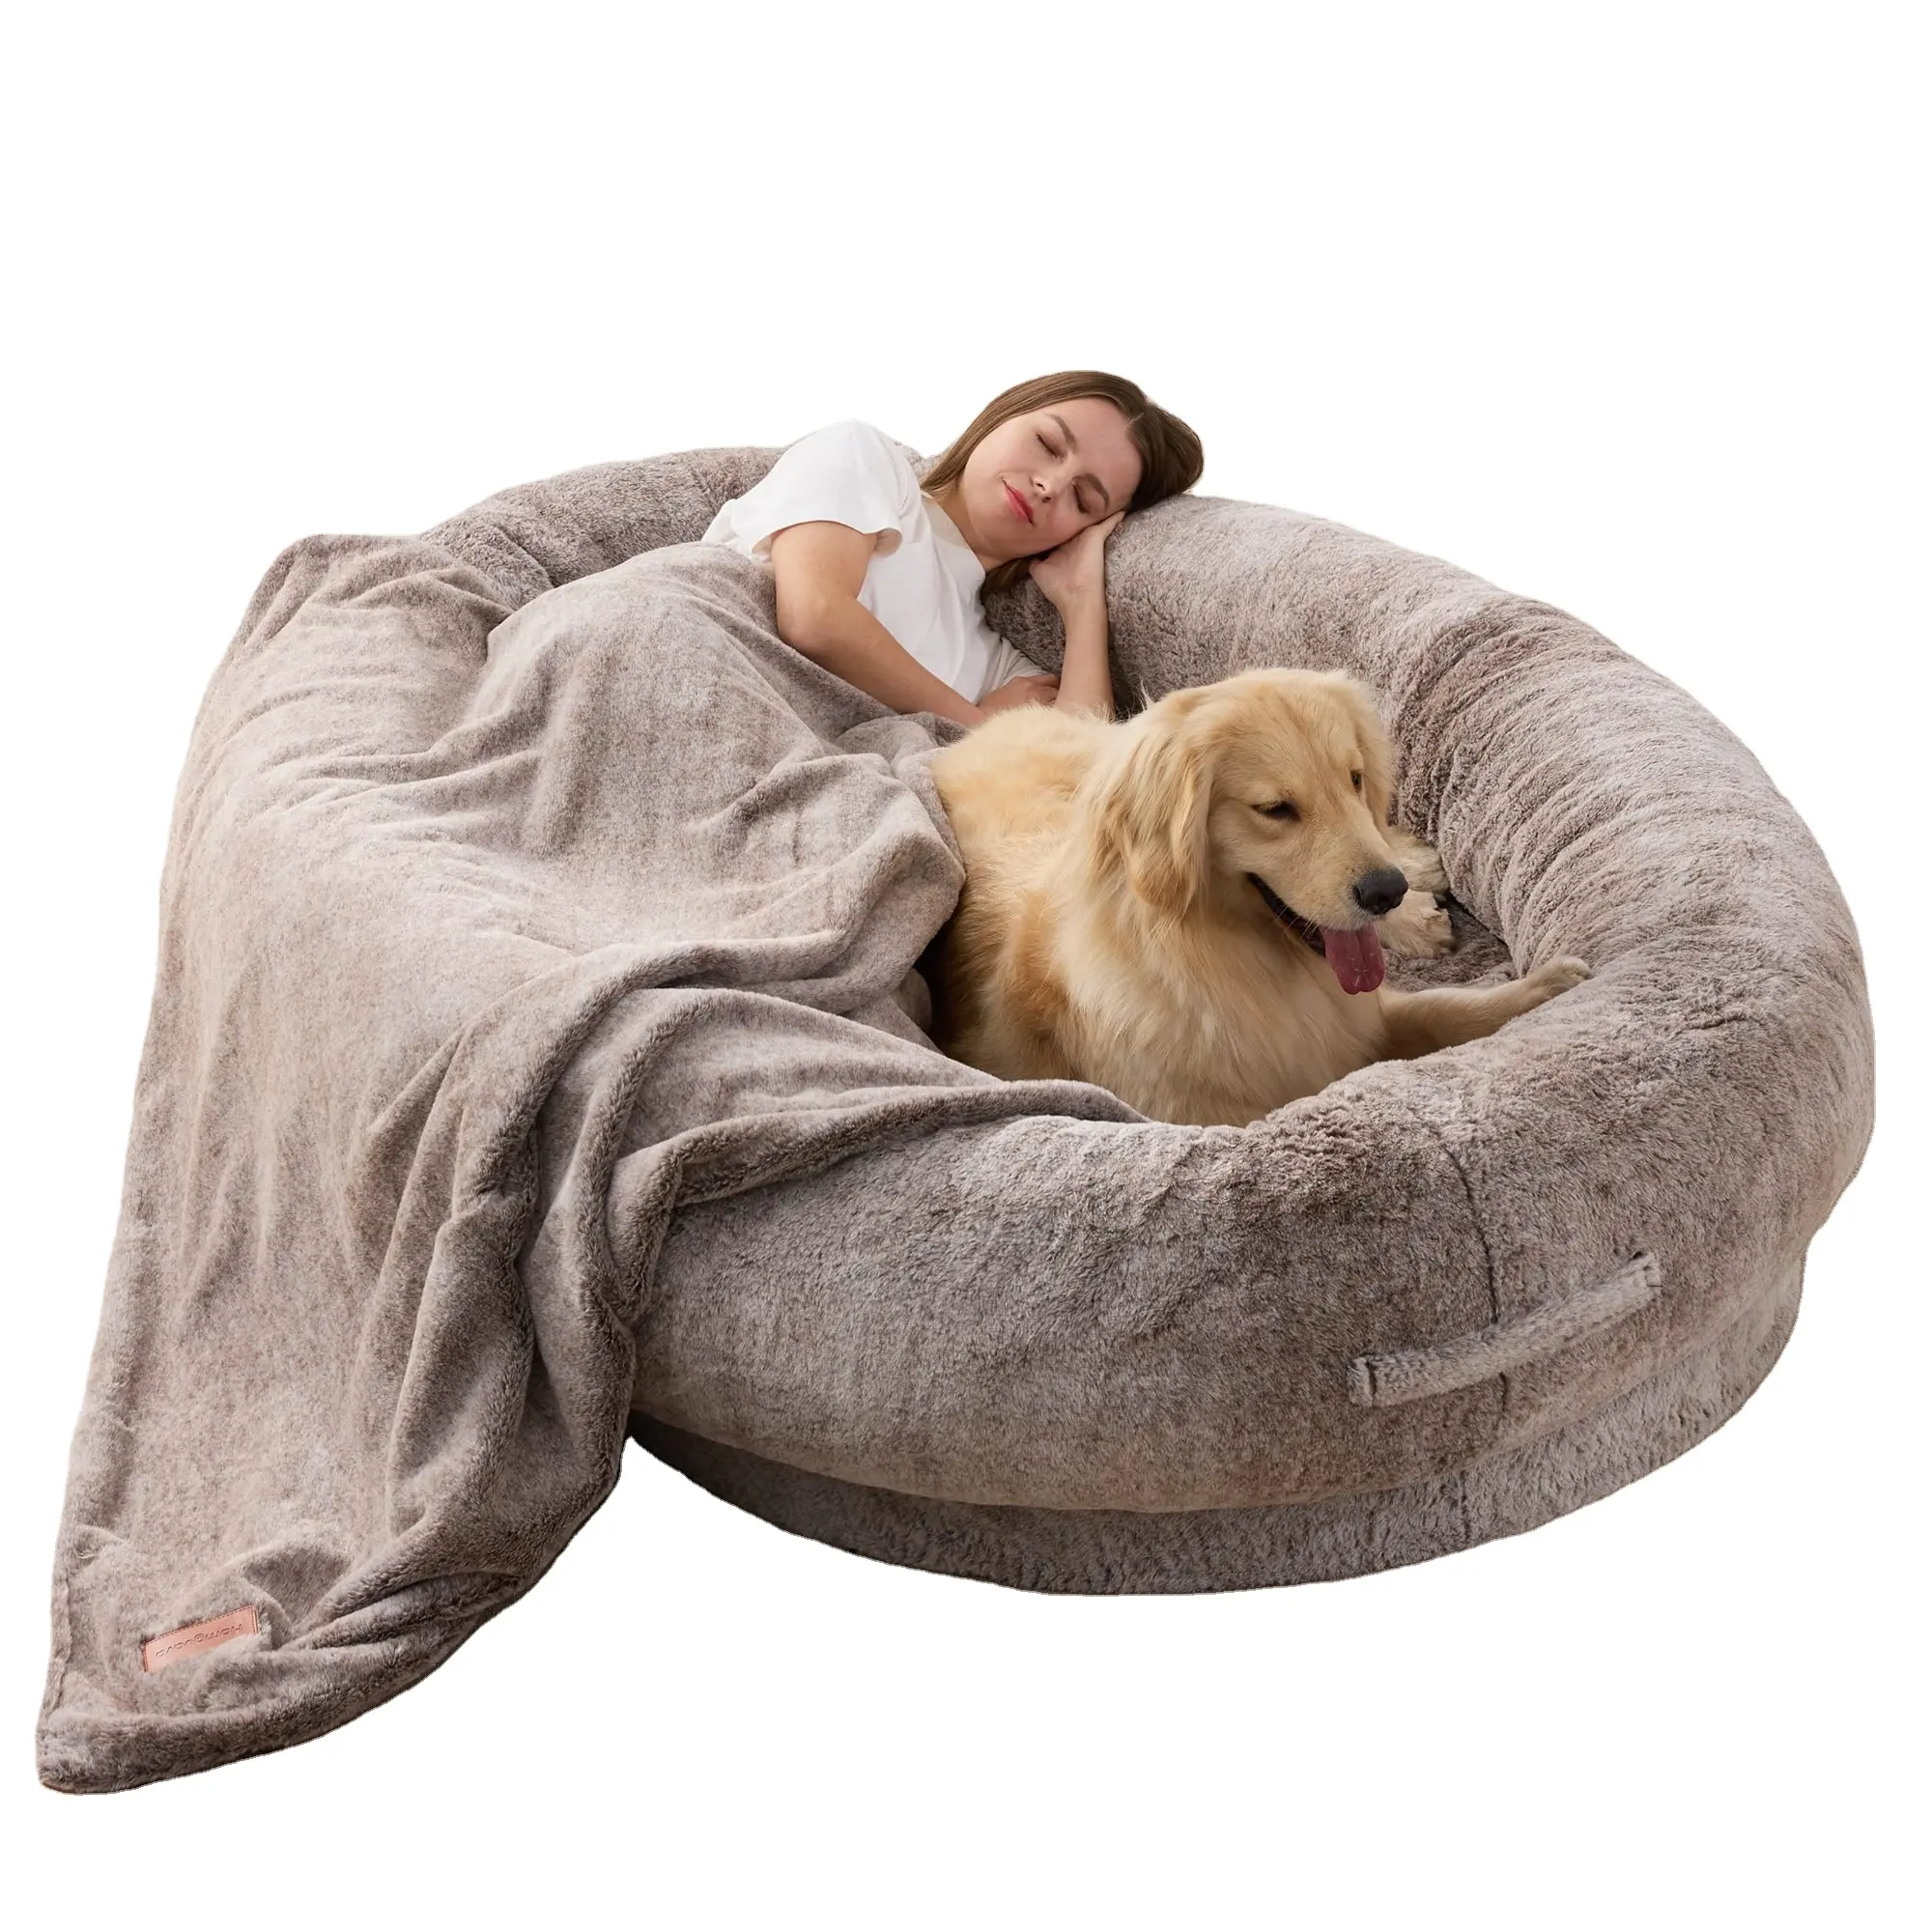 Petdom cama de pelúcia redonda gigante, cama redonda para cachorros humanos ou gatos grandes, sofá de uma pessoa adulto